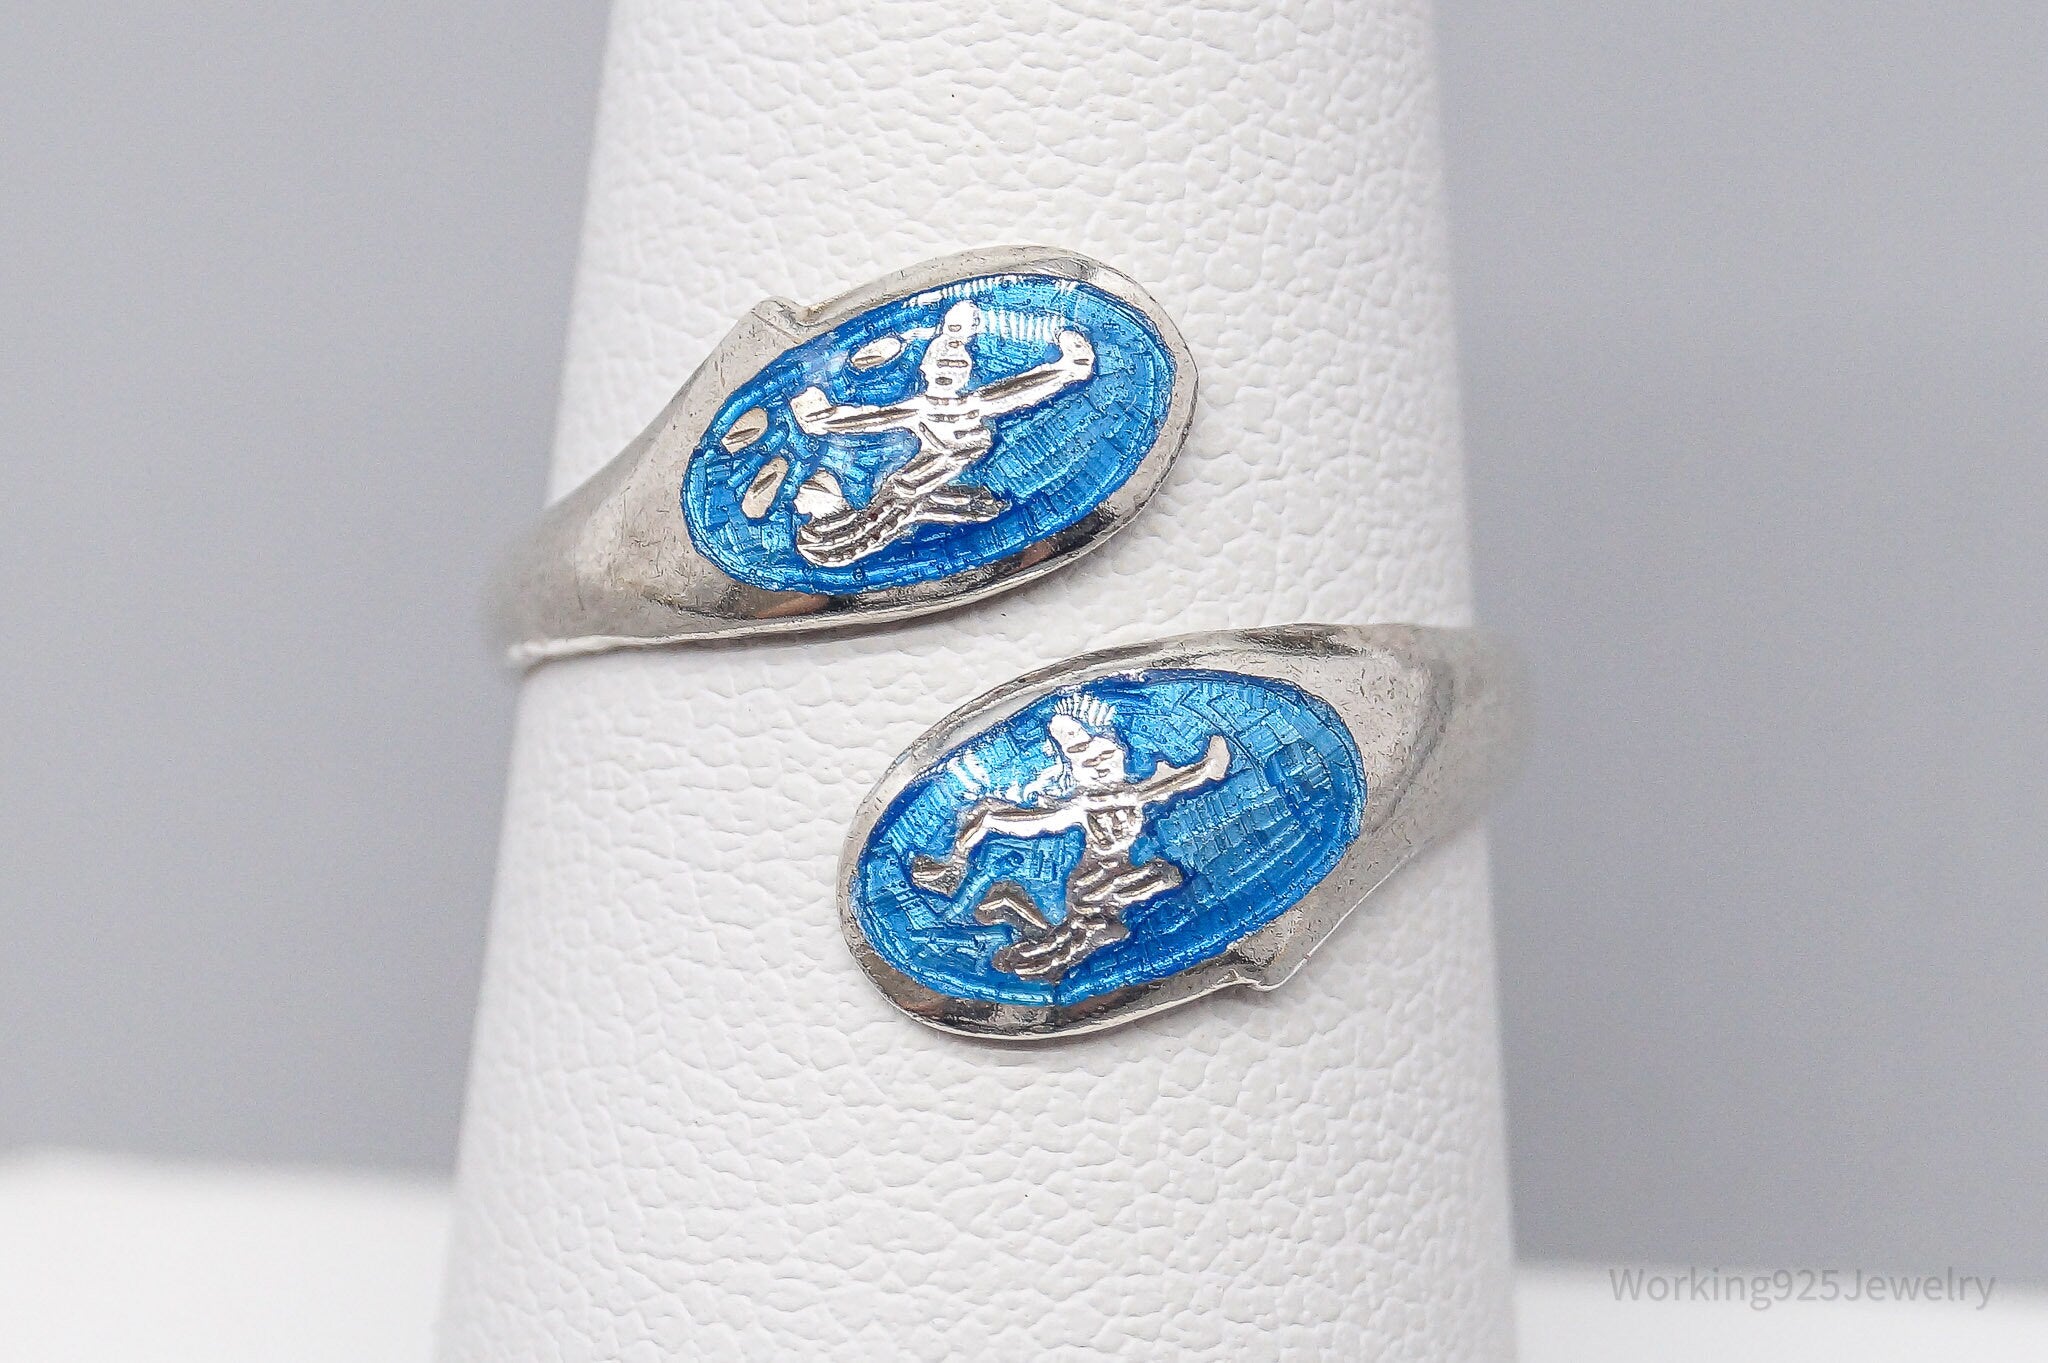 Vintage Blue Enamel Dancers Sterling Silver Wrap Ring - Size 7.25 Adjustable